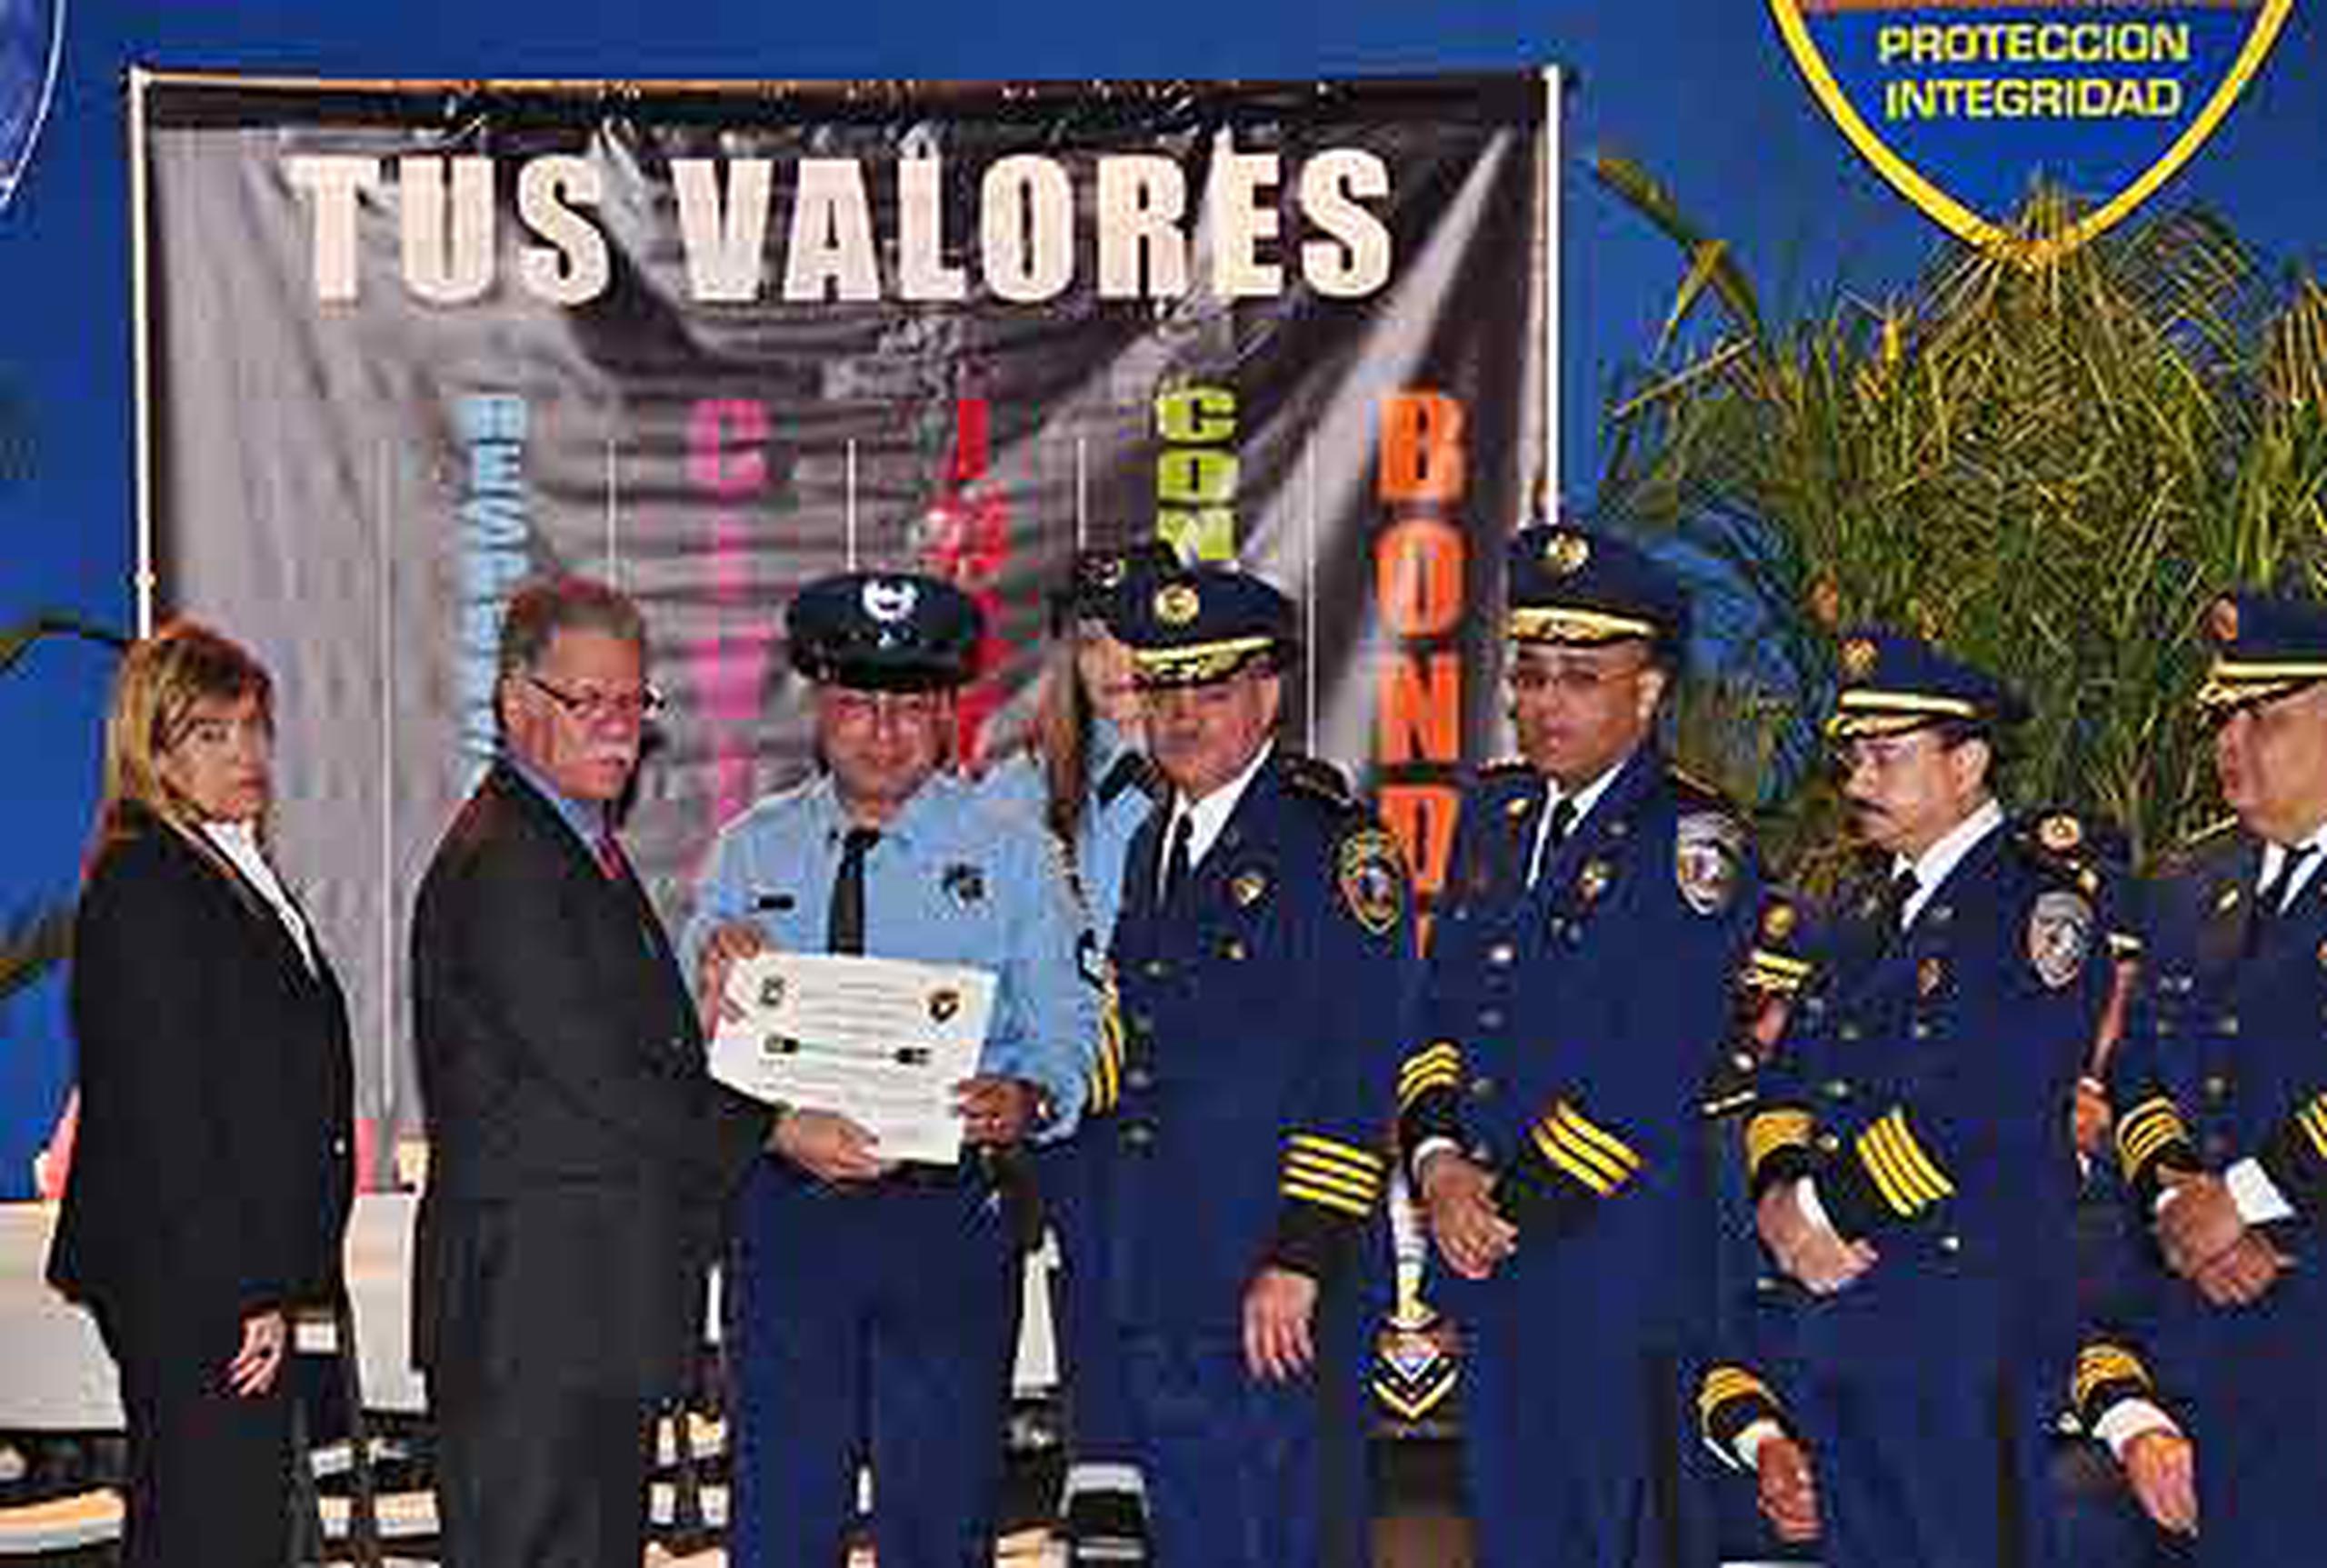 La ceremonia ascensos en rango fue presidida por el superintendente de la Policía, José Figueroa Sancha, y la rectora del Colegio Universitario de Justicia Criminal, Zulma Méndez Ferrer. (Suministrada)